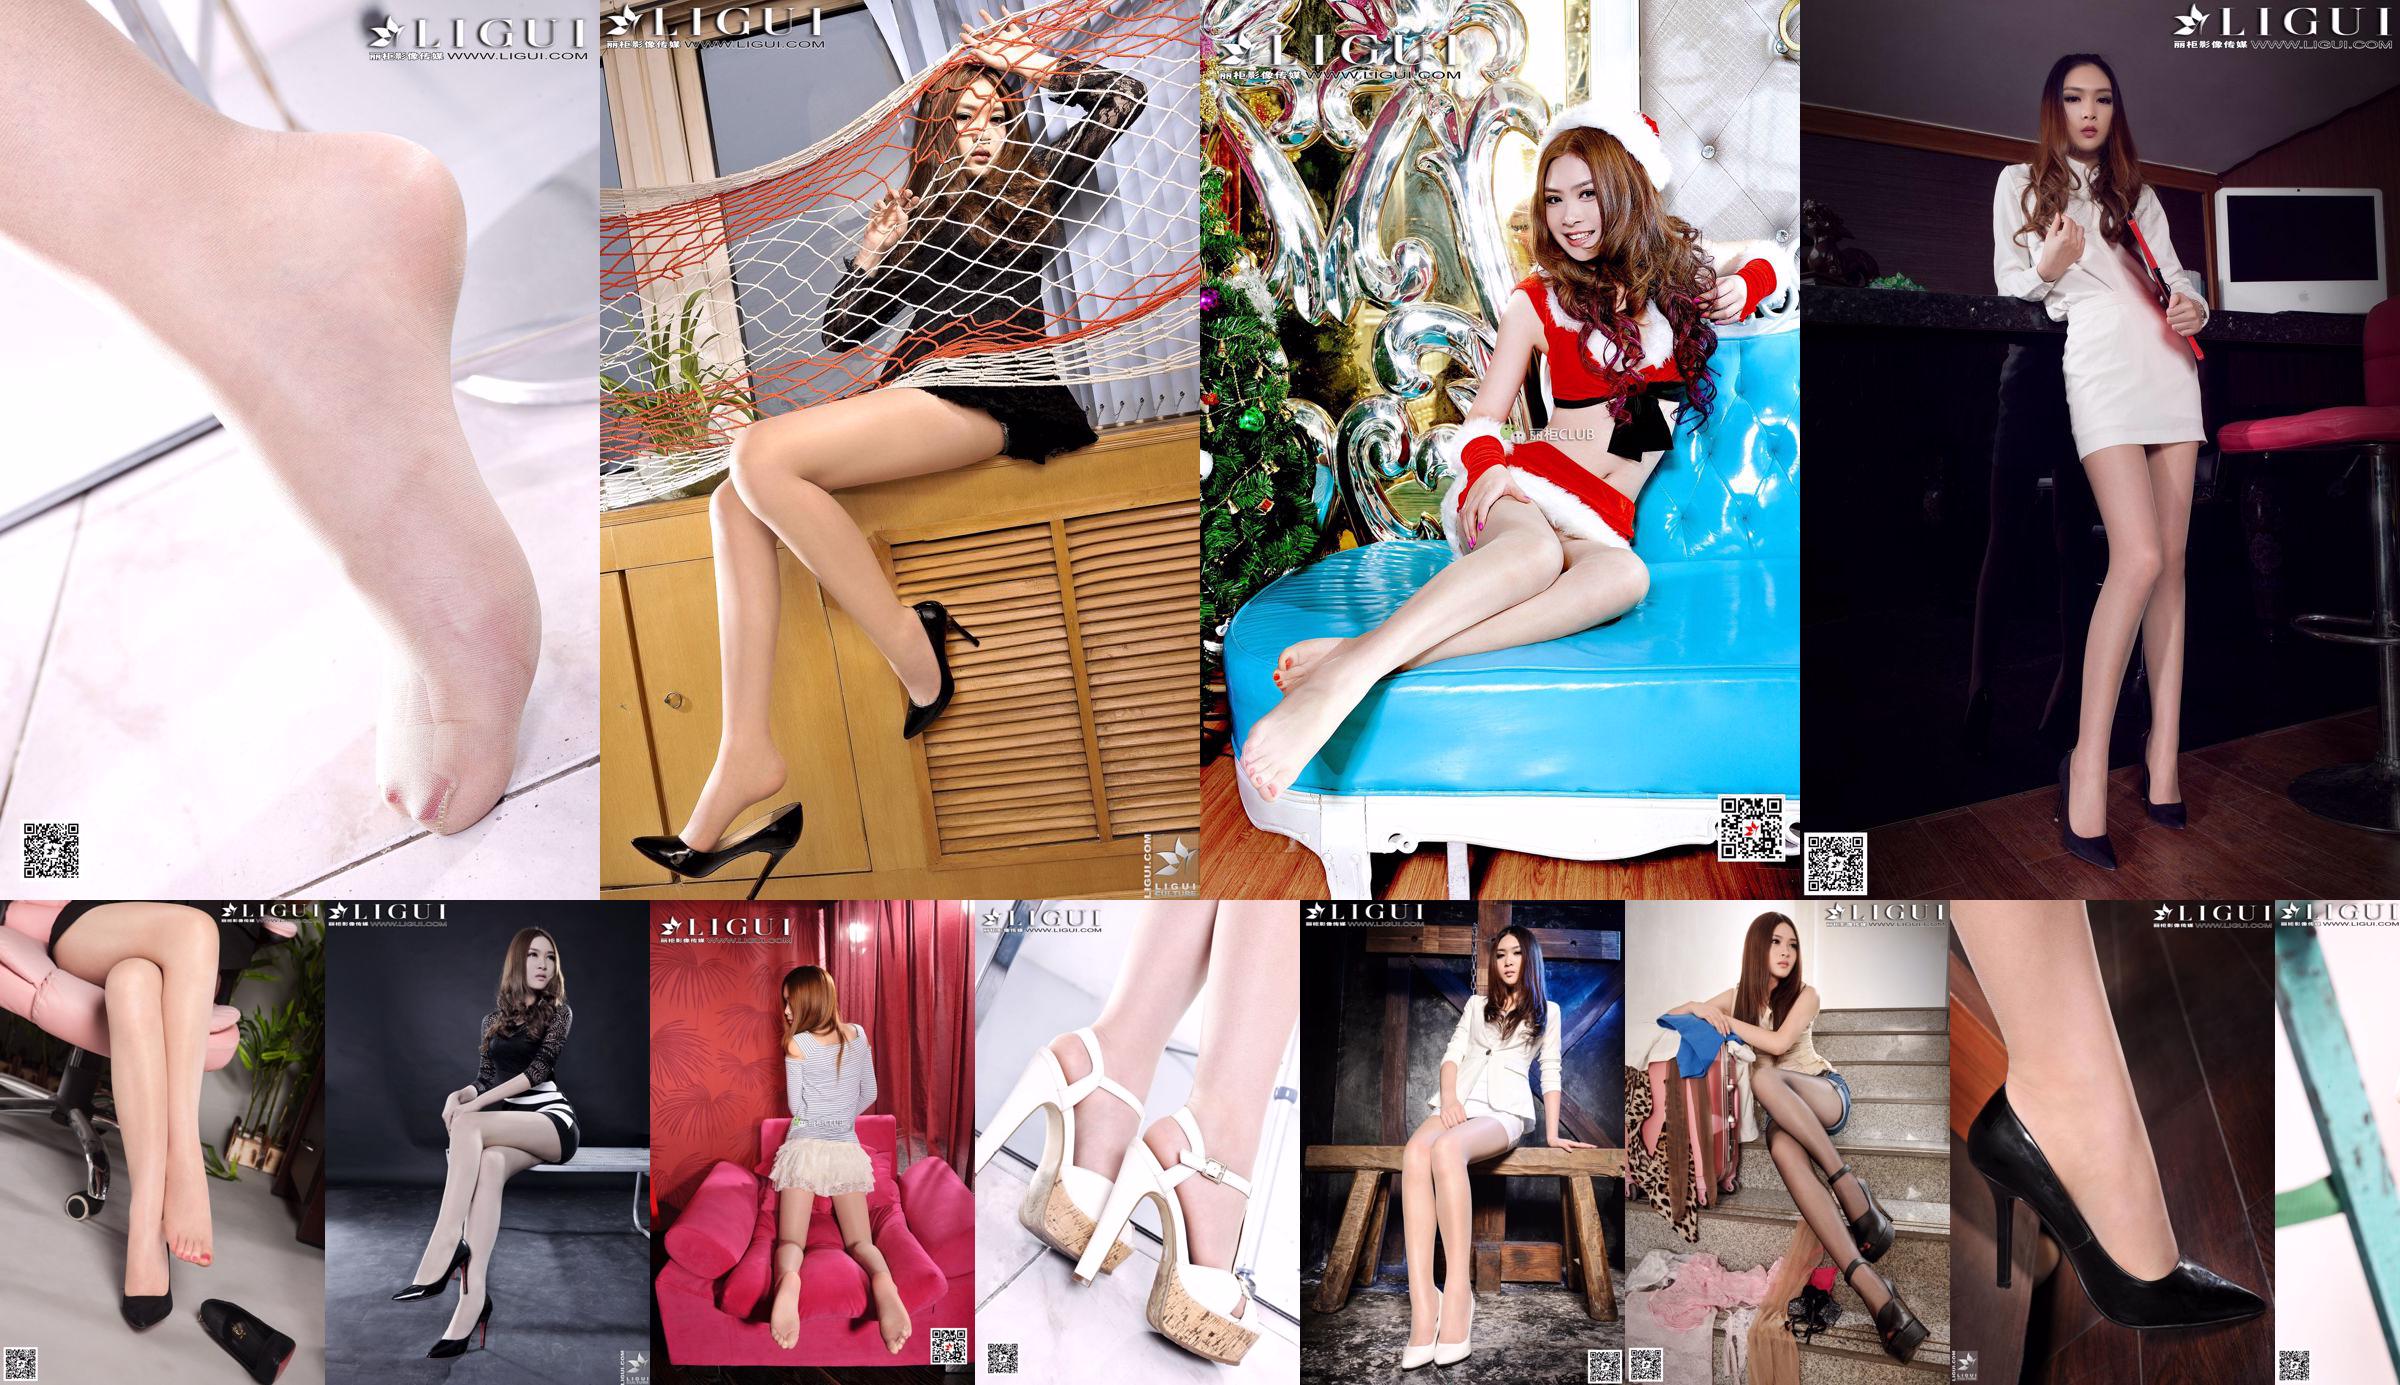 [丽 柜 LiGui] Tác phẩm hoàn chỉnh bộ ảnh chân dài và chân ngọc của người mẫu "Office Silky Foot" của Yoona No.7a2b53 Trang 37